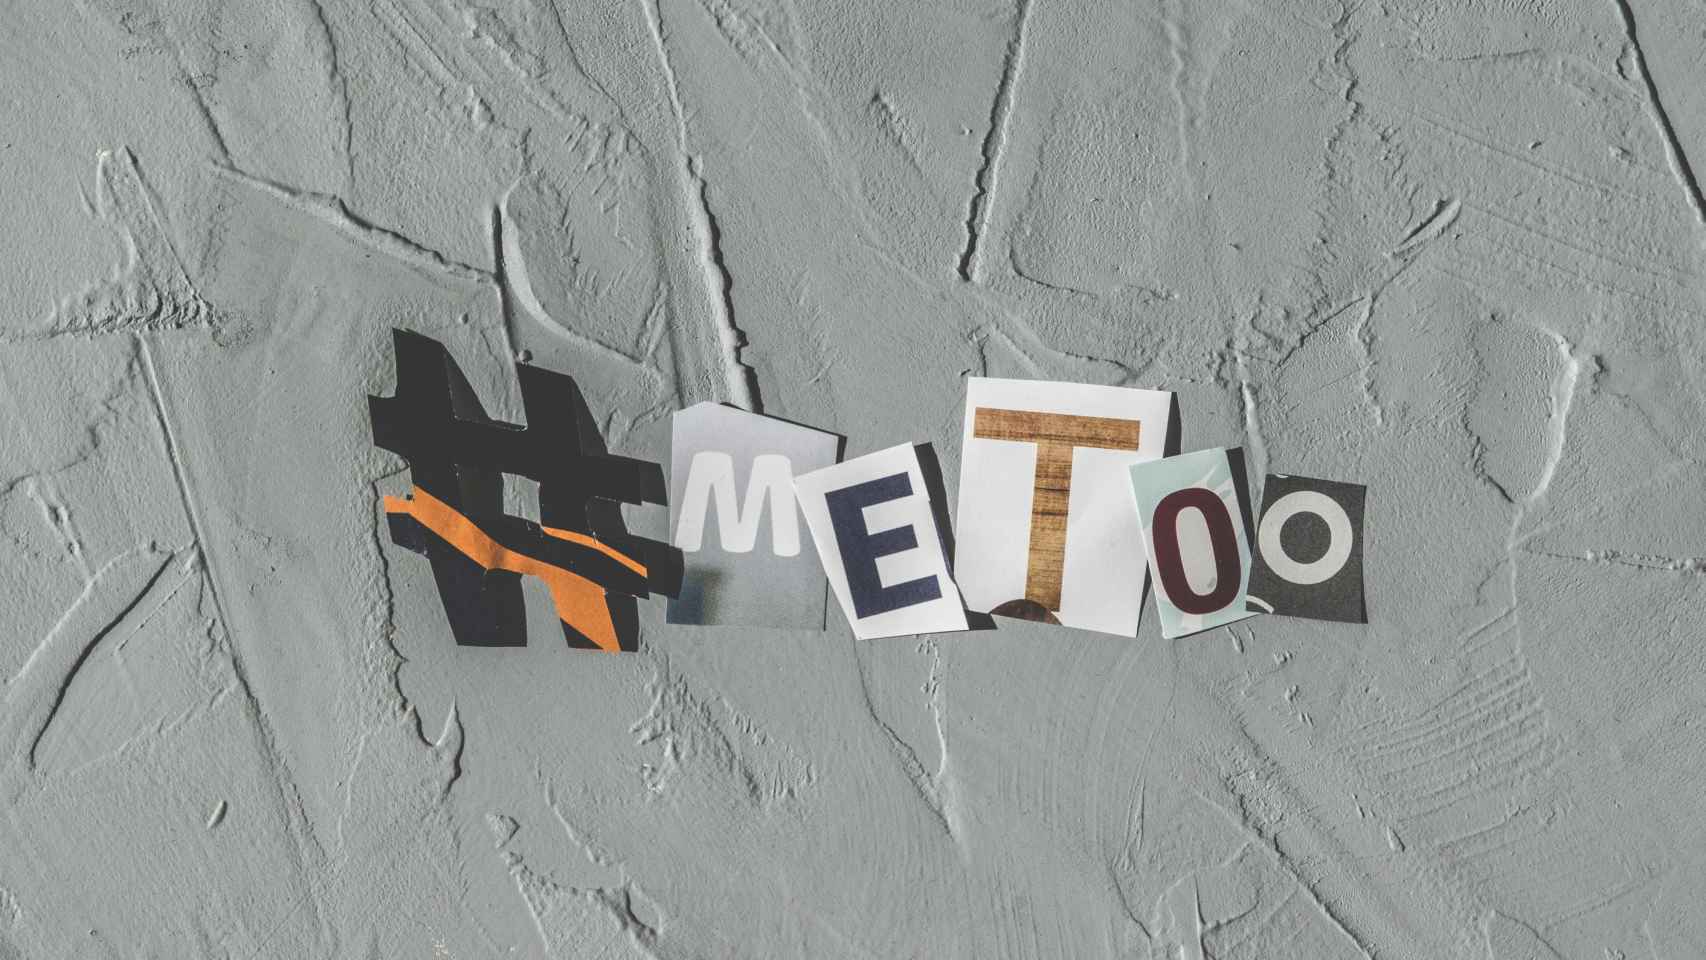 Cartel de la campaña 'Me too' en contra de las agresiones sexuales